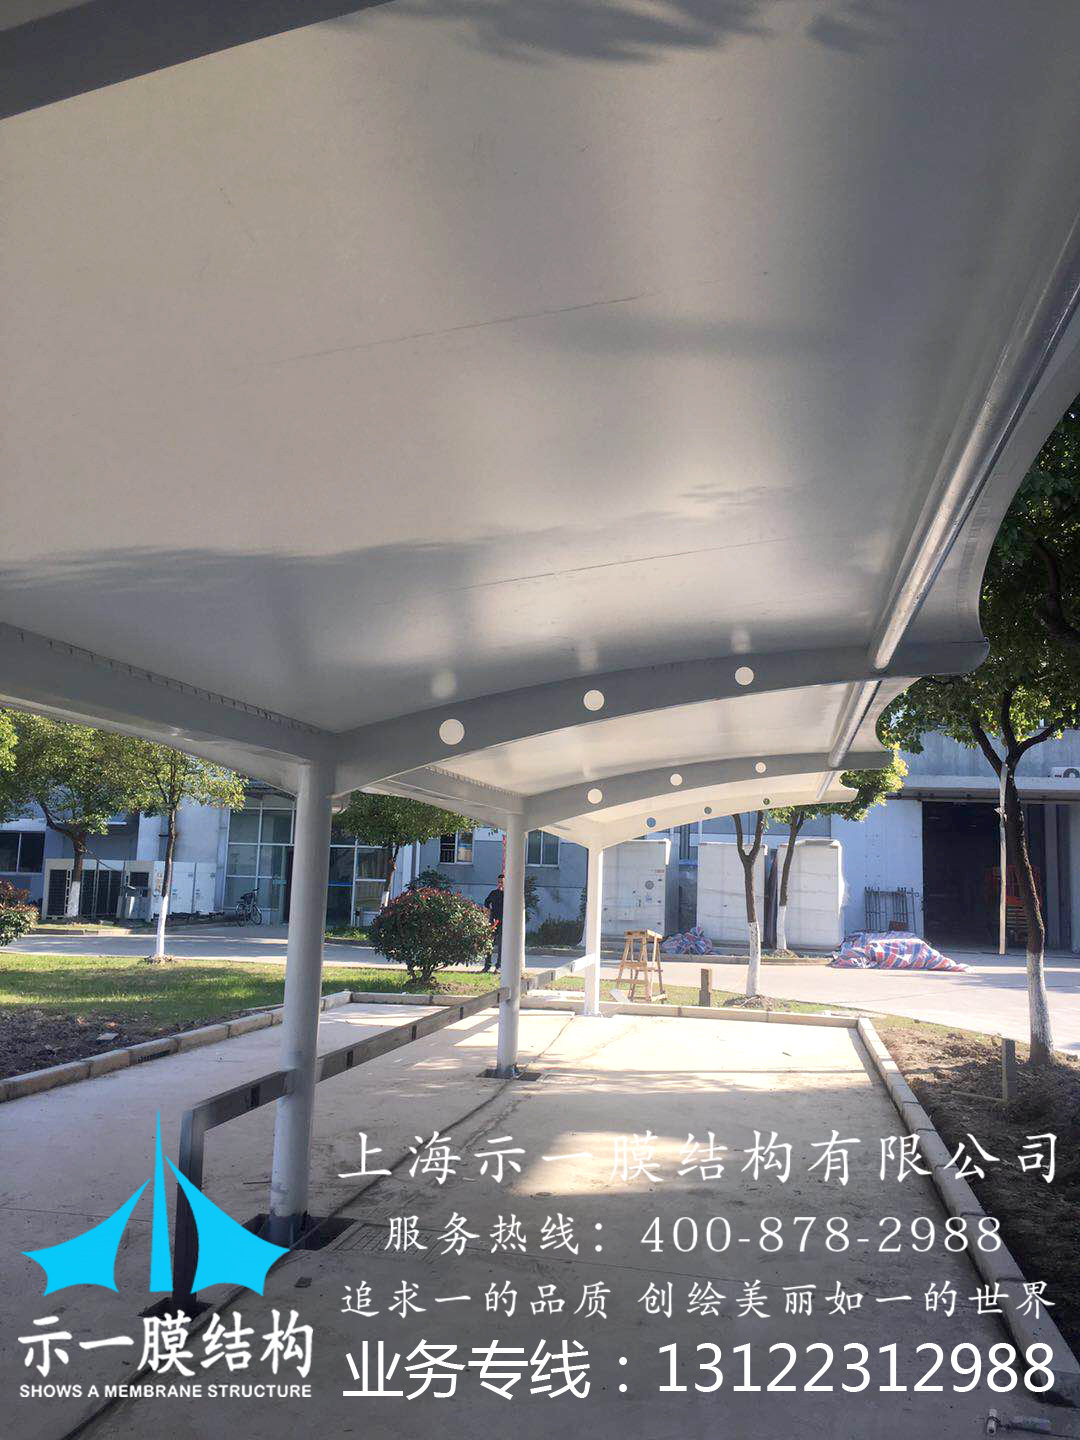 上海示一膜结构中国精密光电研究院膜结构车棚